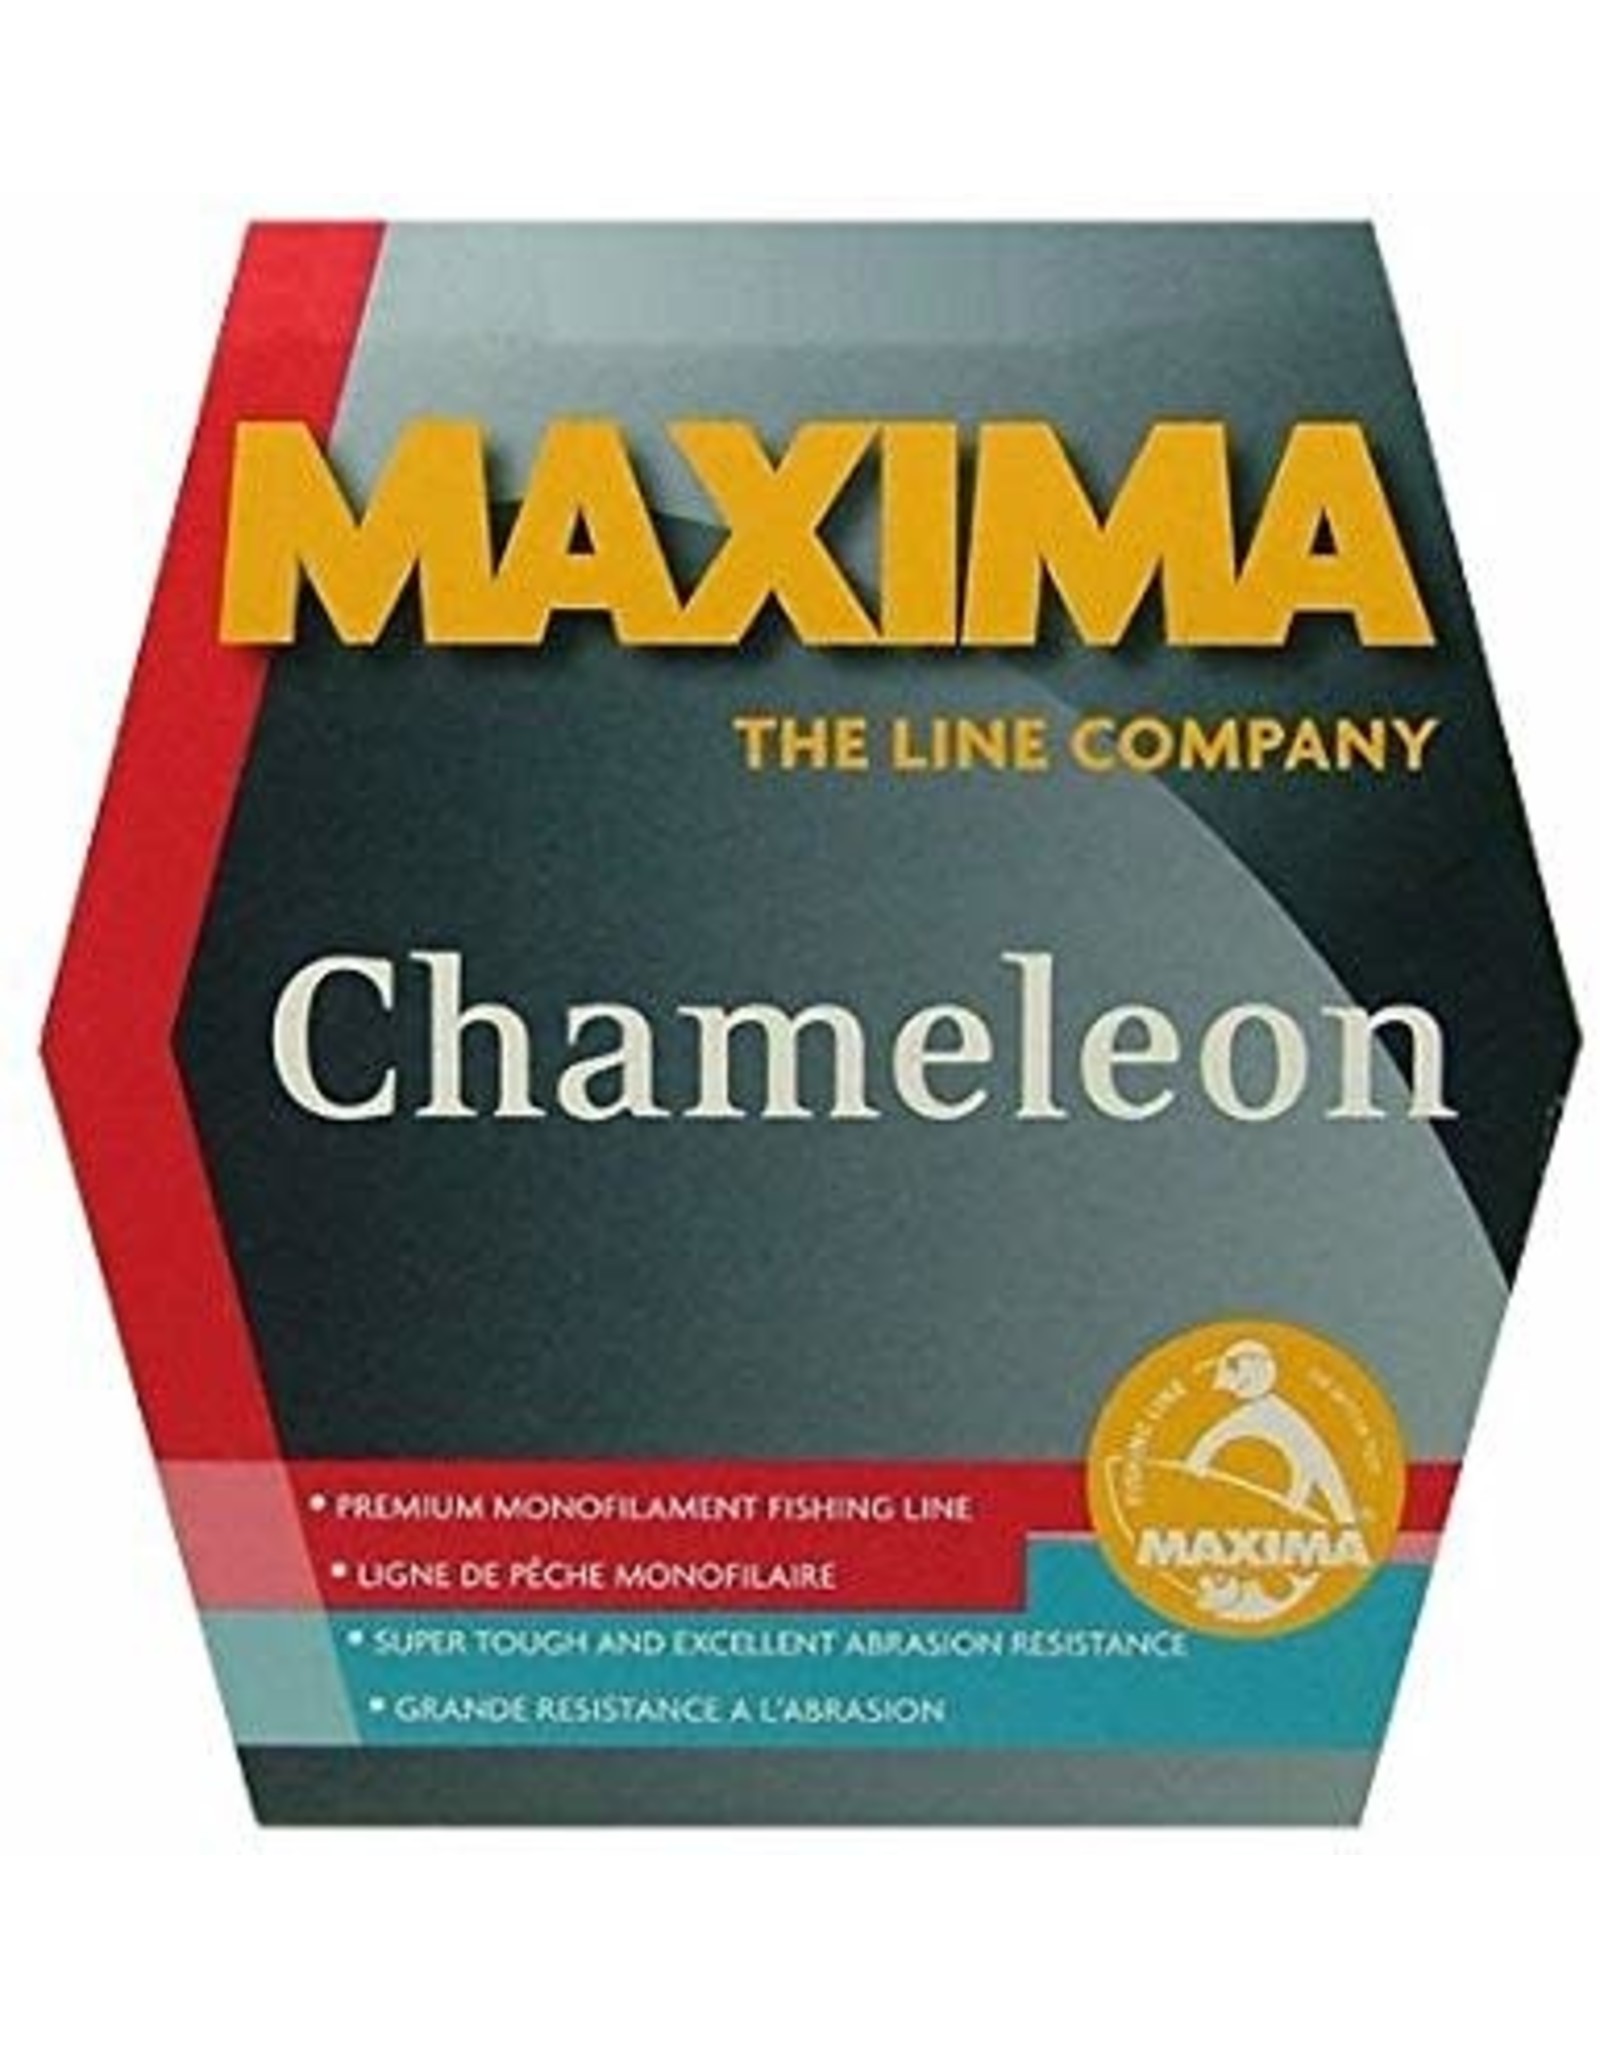 Maxima Maxima Chameleon 250 Yds 25#